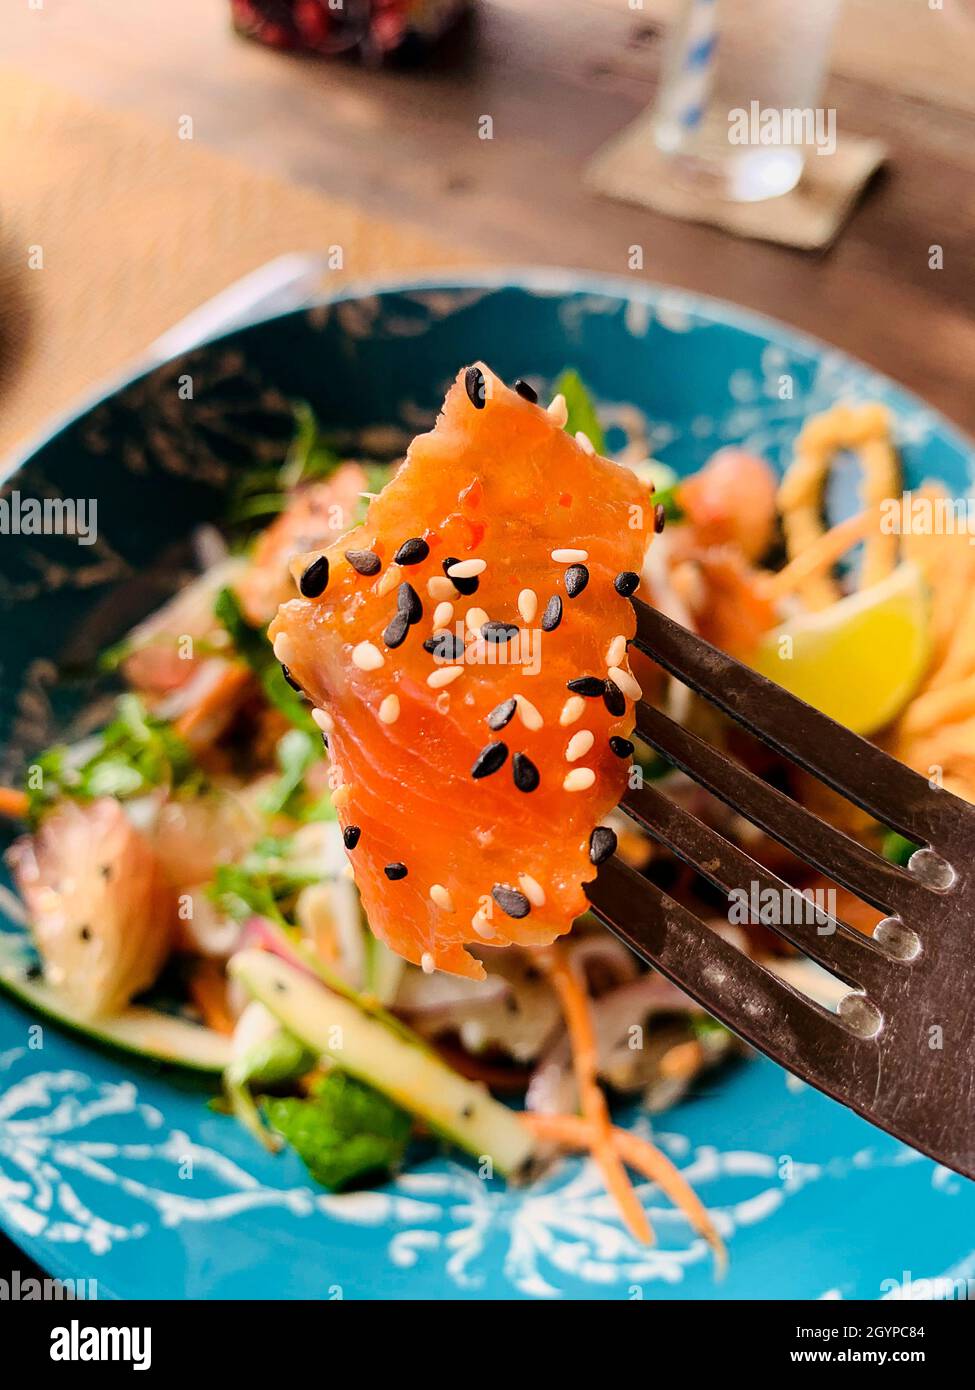 Salade de fruits de mer servie au restaurant Hoi an avec saumon cru. Banque D'Images